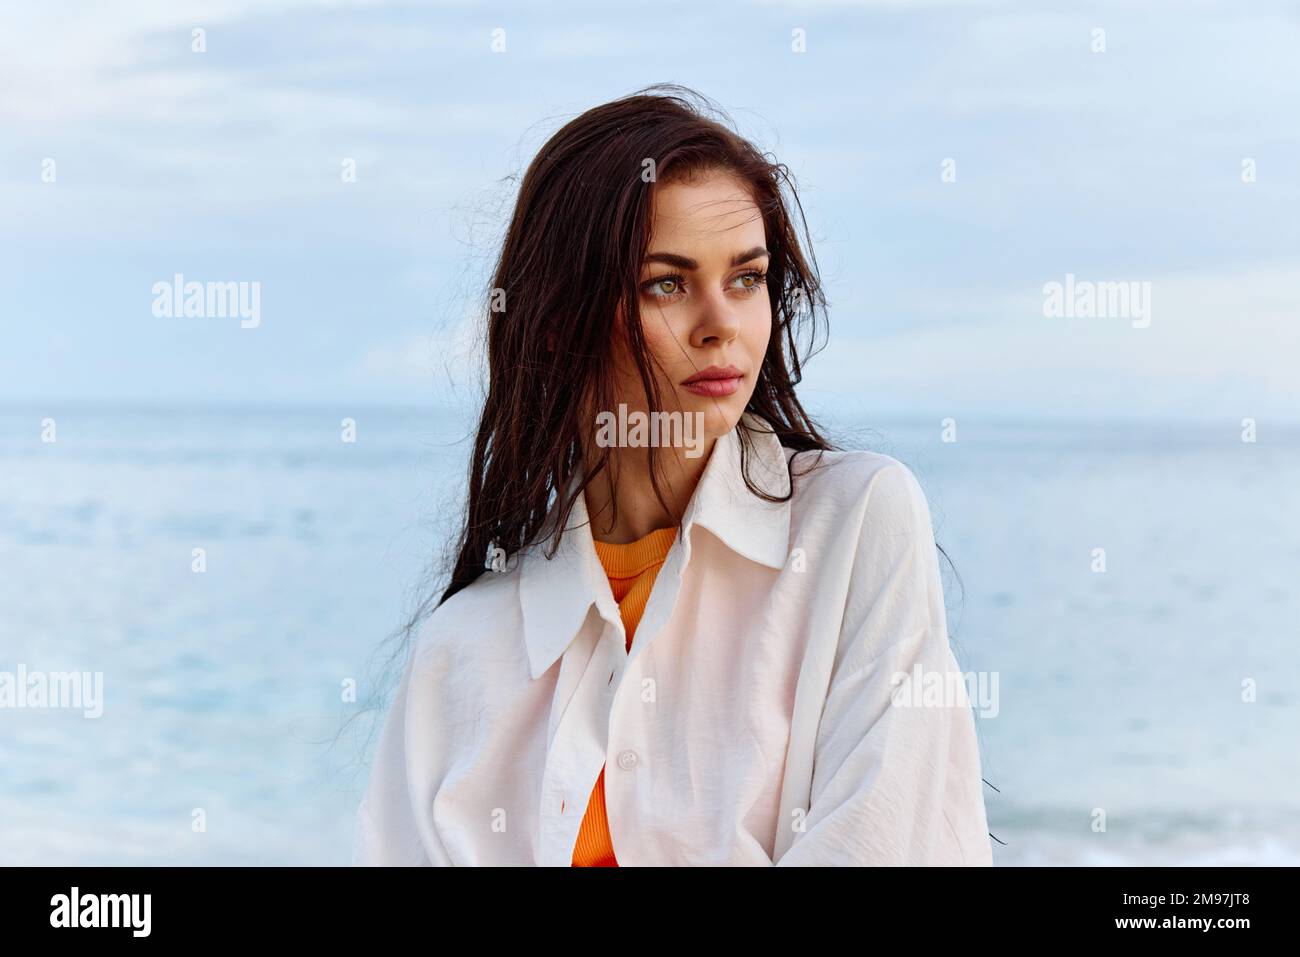 Portrait d'une belle femme pensive avec une peau bronzée dans une chemise de plage blanche avec des cheveux mouillés après avoir nagé sur la plage de l'océan coucher de soleil lumière avec des nuages Banque D'Images